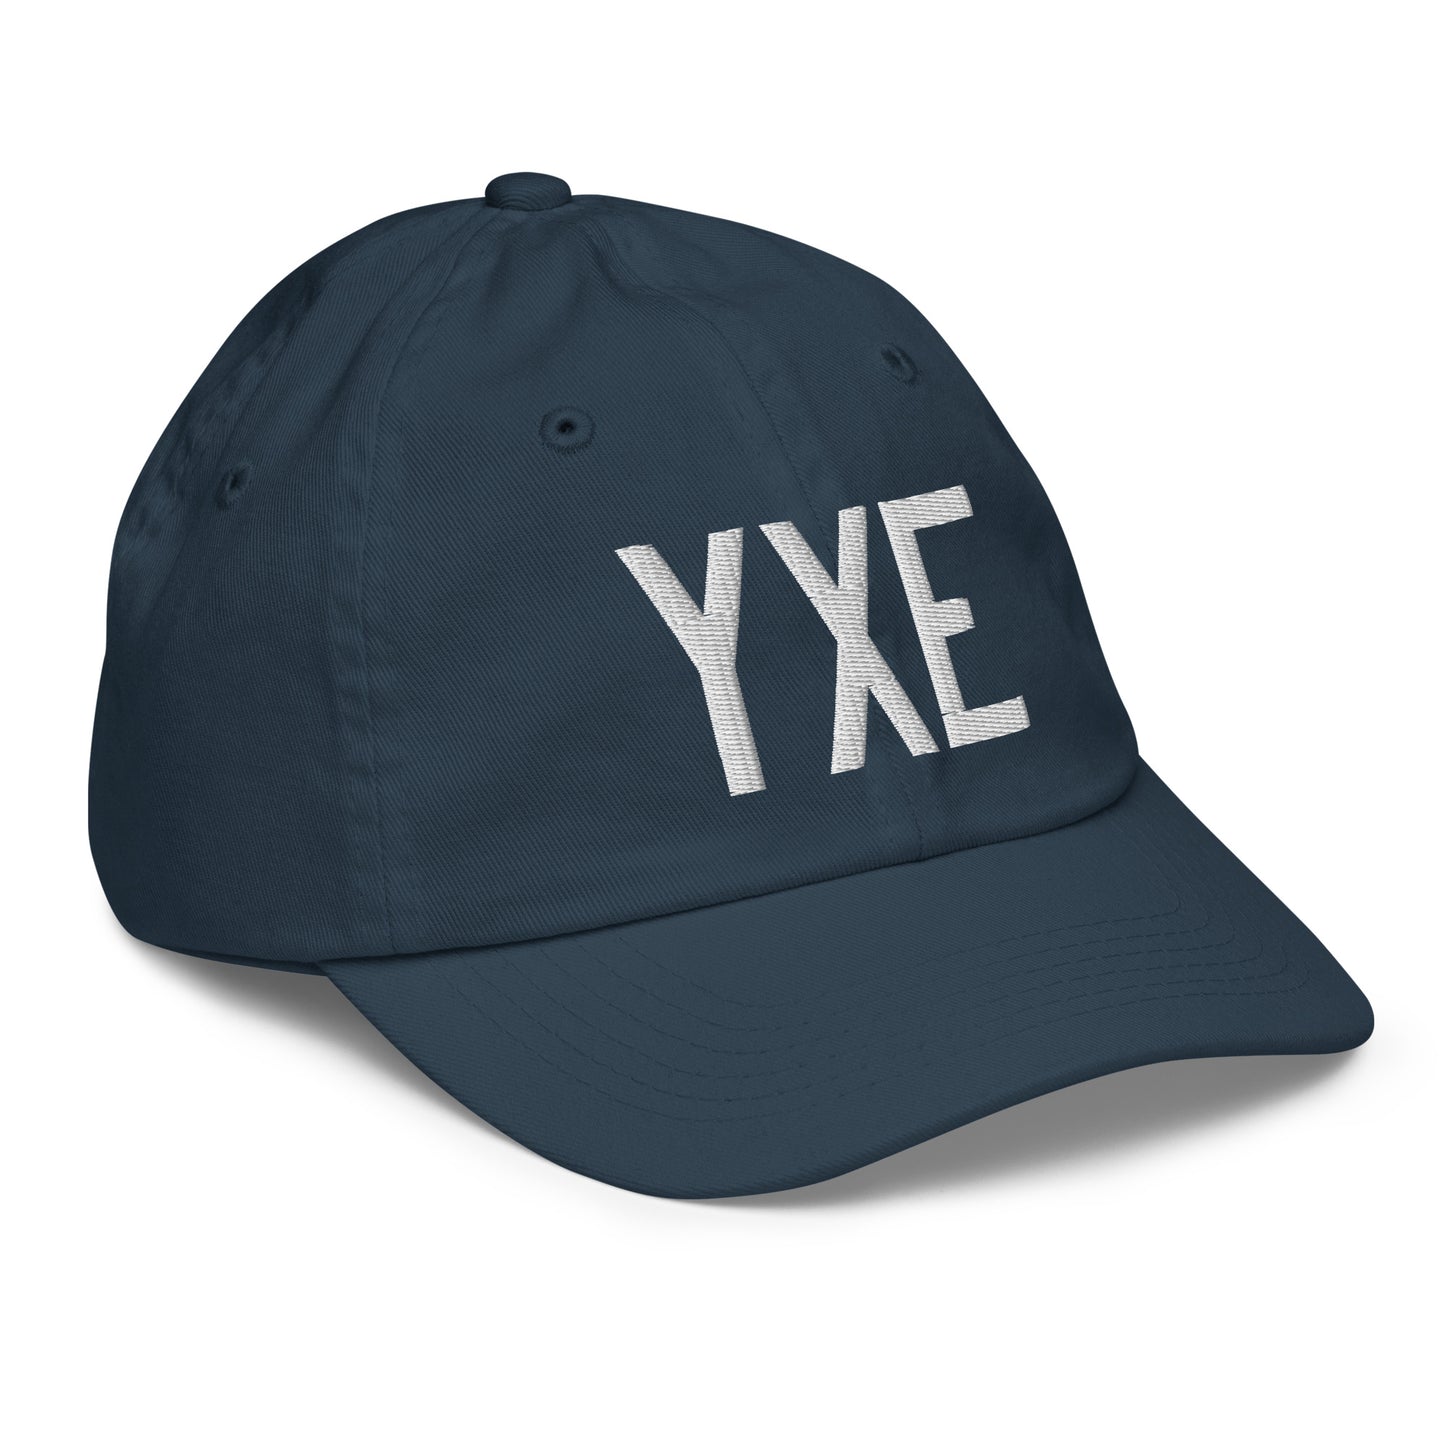 Airport Code Kid's Baseball Cap - White • YXE Saskatoon • YHM Designs - Image 15